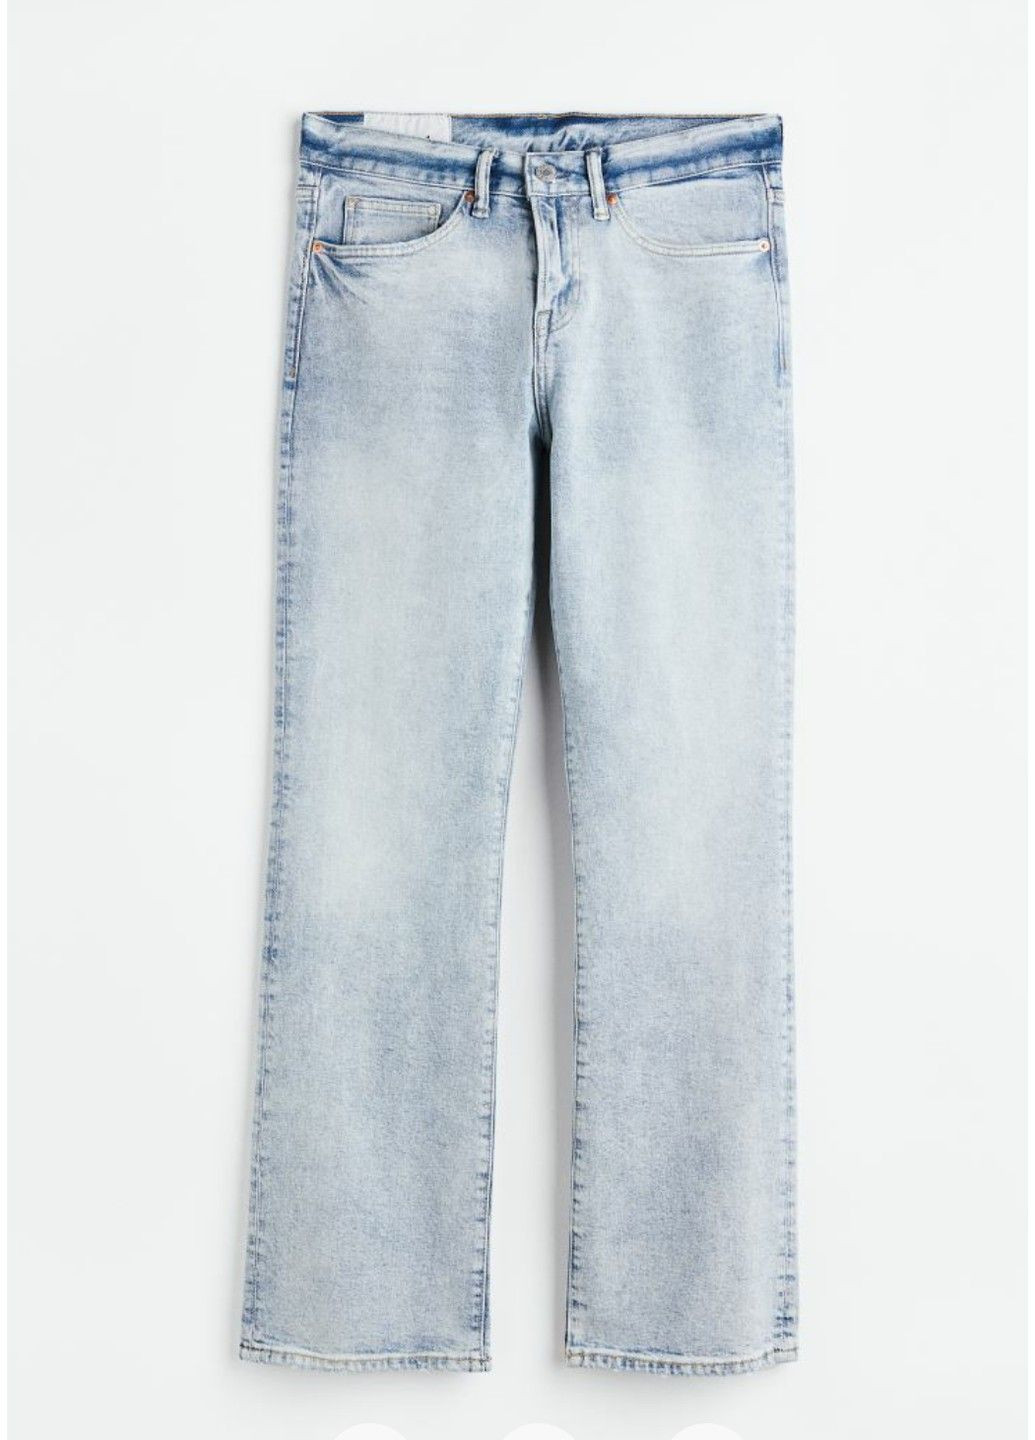 Чоловічі завужені джинси кльош Н&М (56019) W33 L32 Блакитні H&M (289797869)